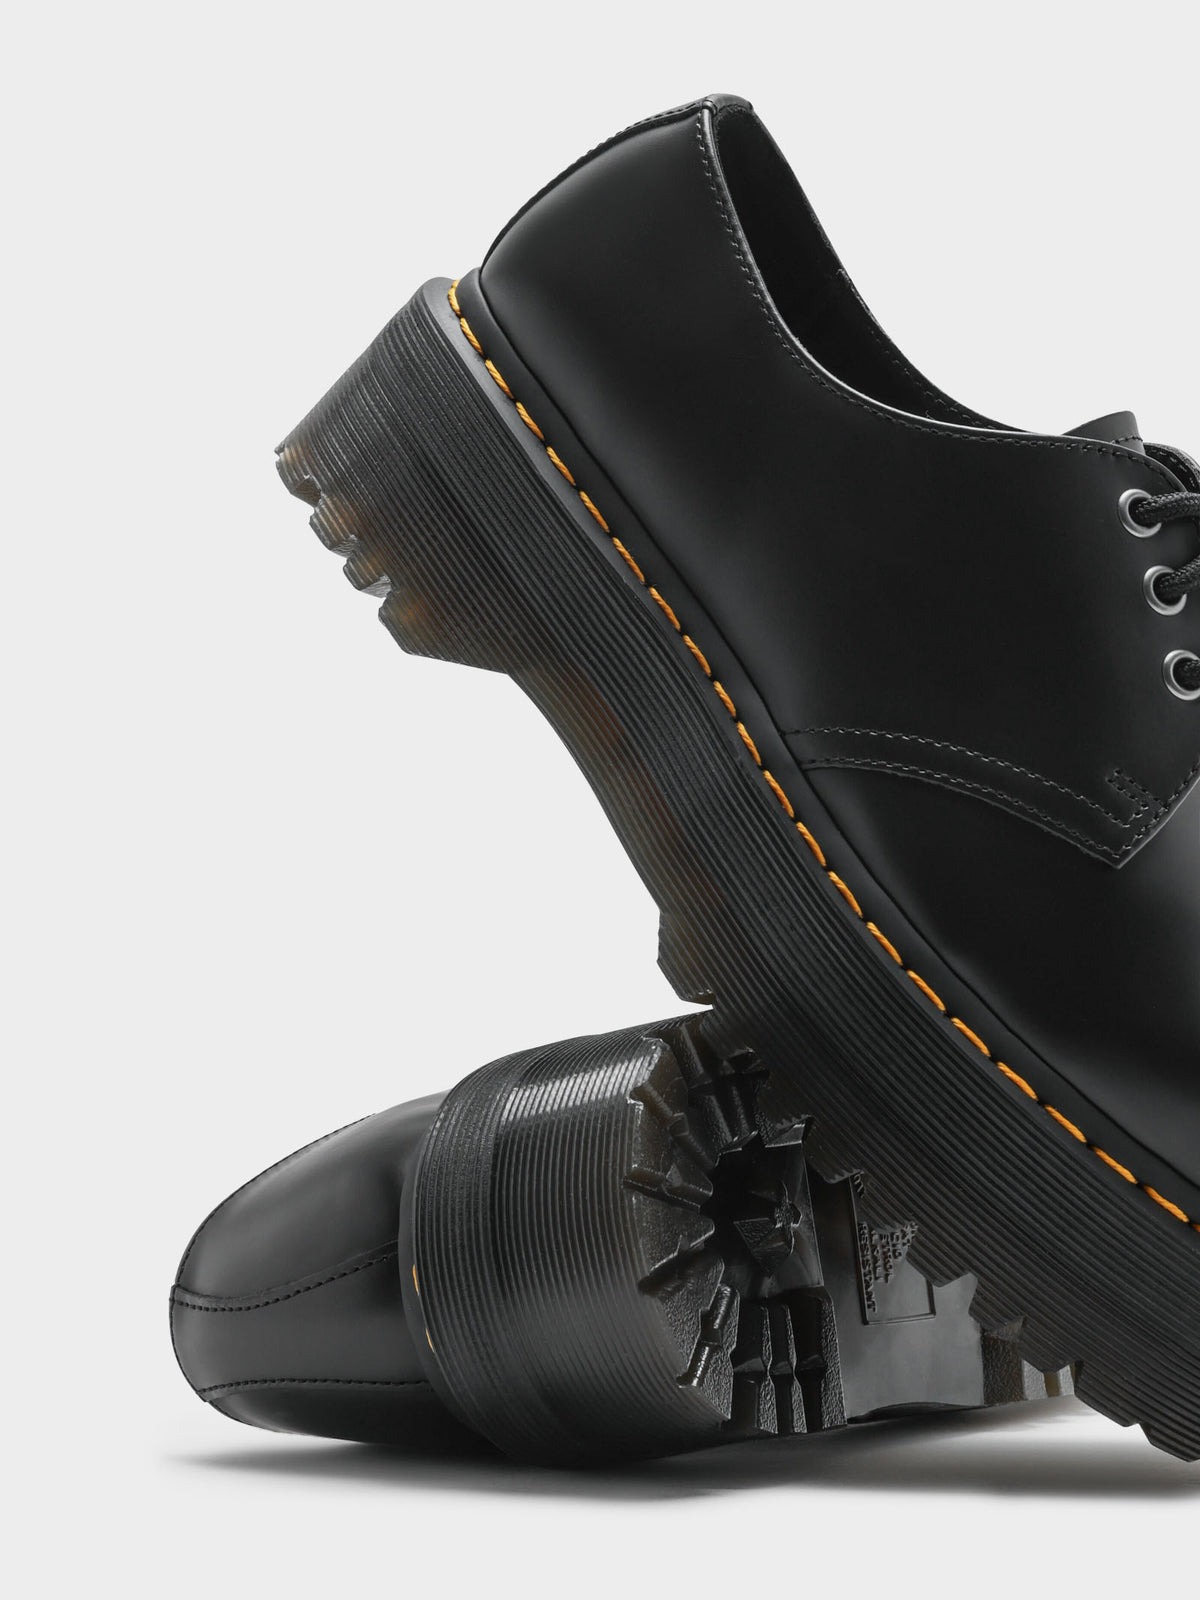 Unisex 1461 Quad Polished Platform Shoes in Black